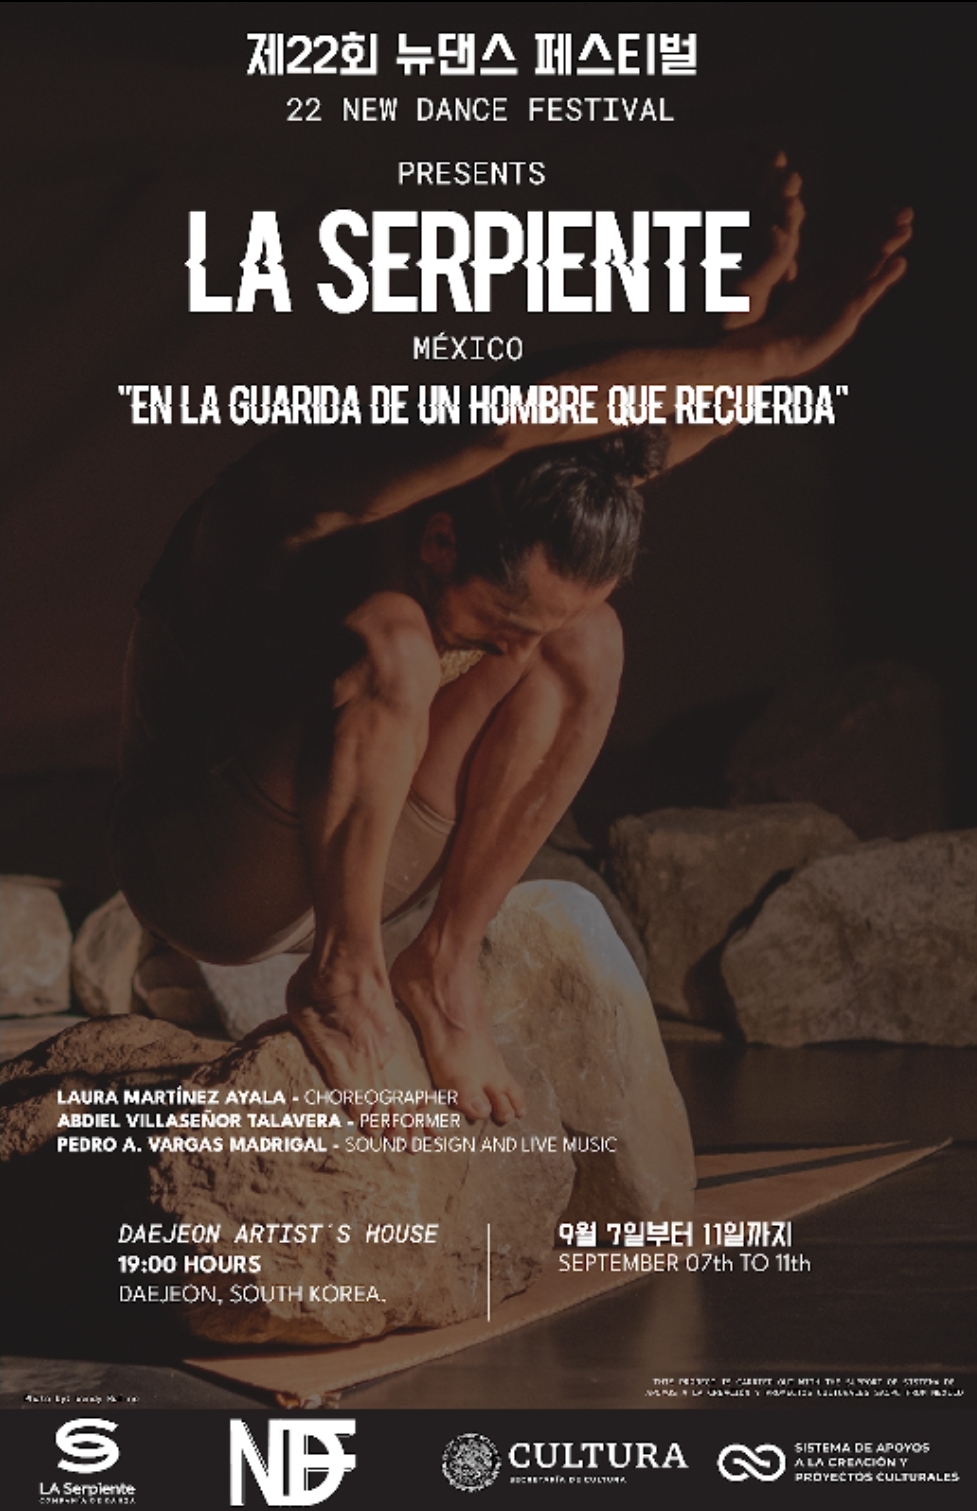 Compañía mexicana de danza contemporánea “La Serpiente” se presenta en el New Dance Festival de Corea del Sur